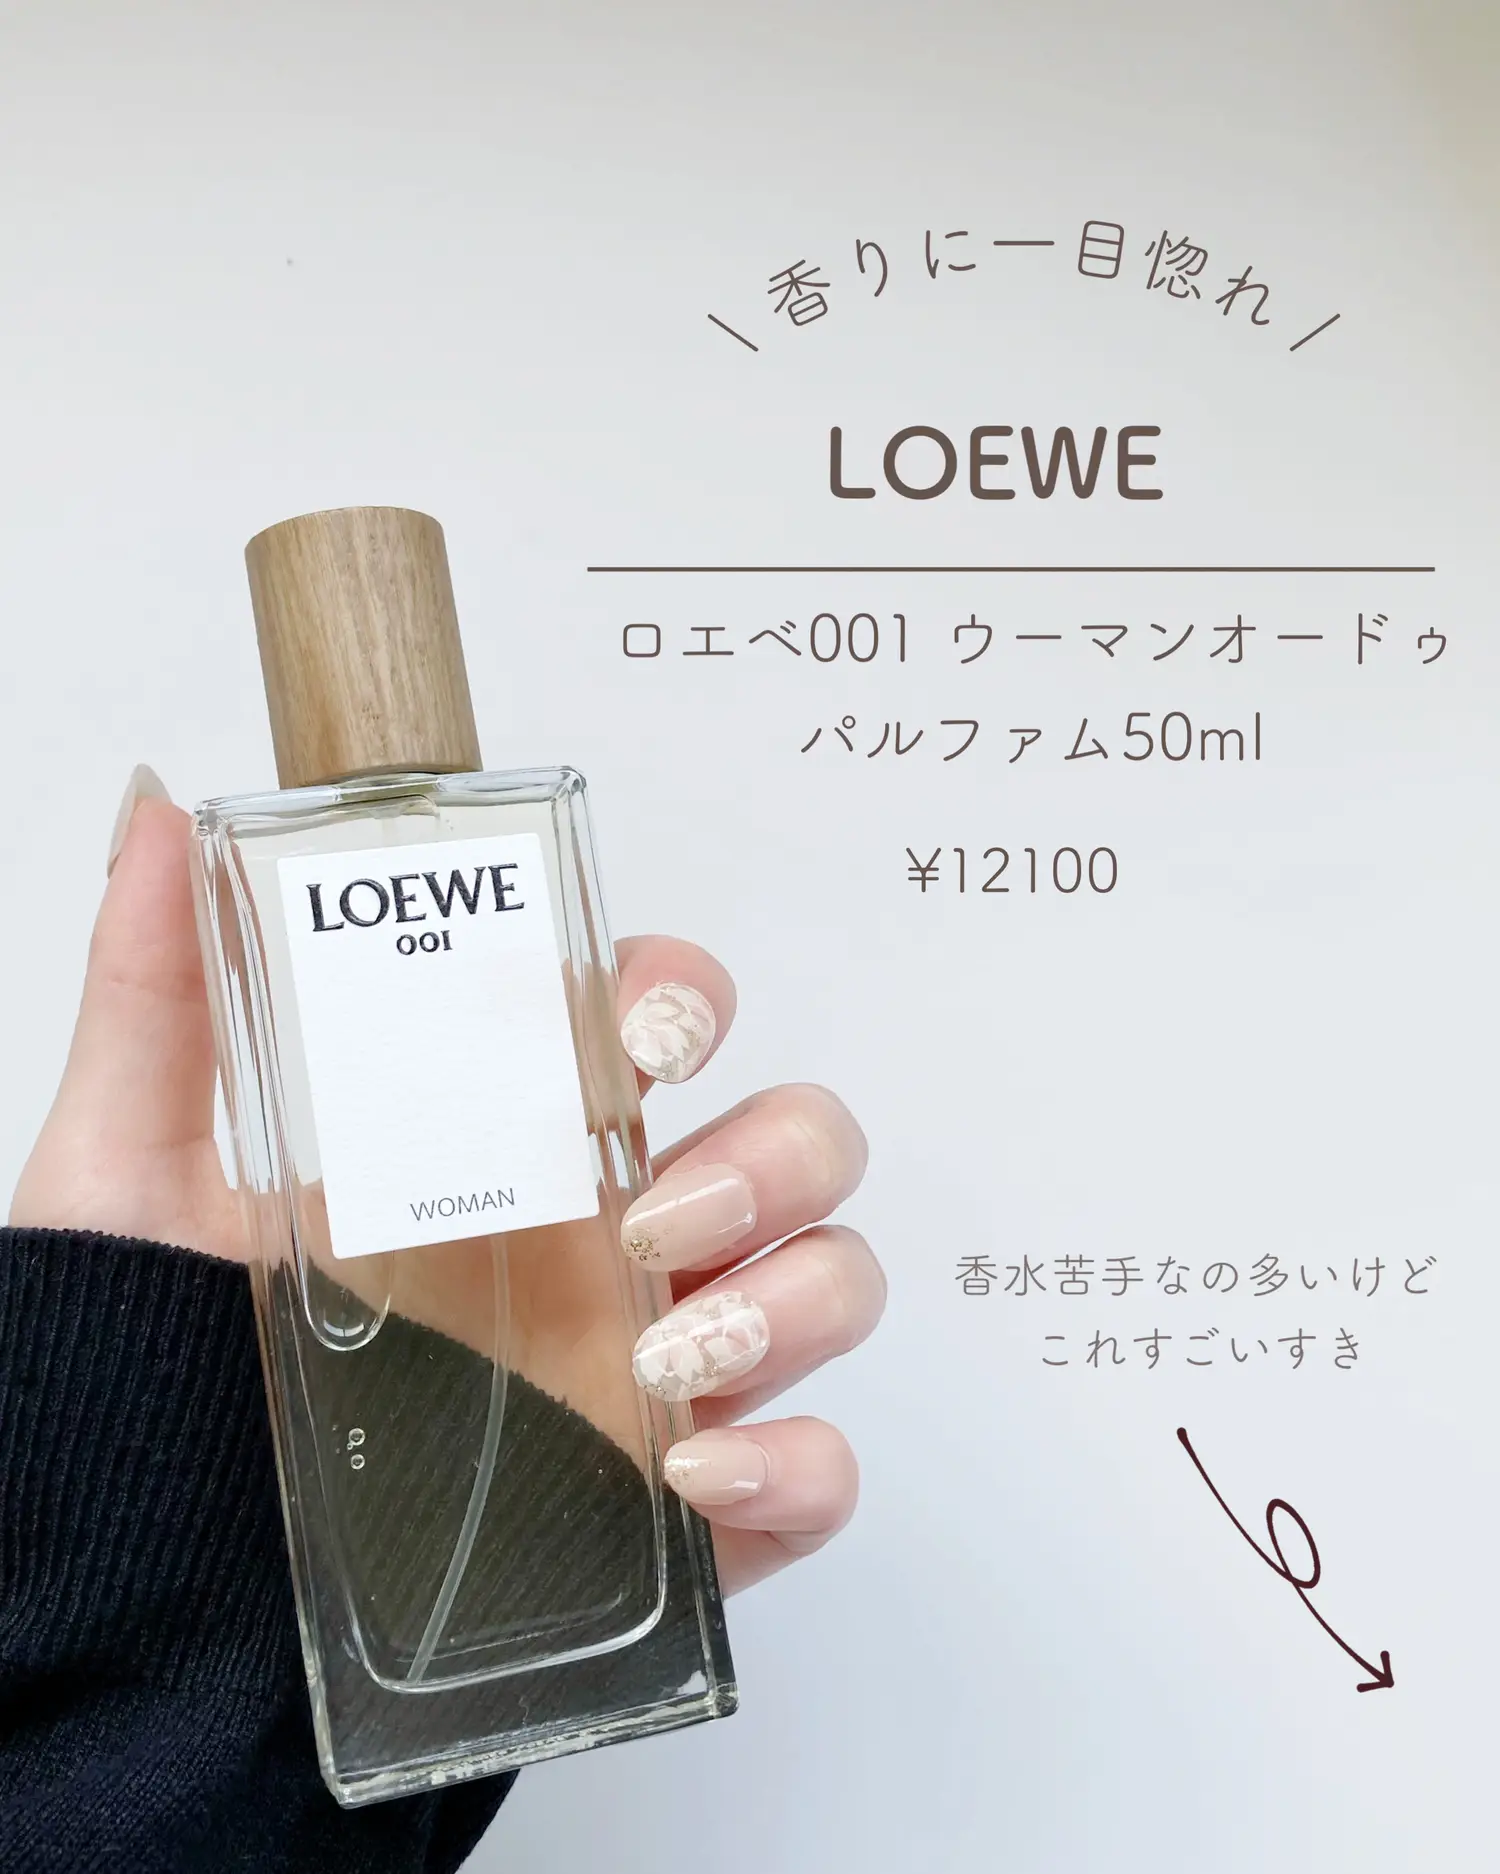 LOEWE リボン・香水サンプル - 香水(ユニセックス)